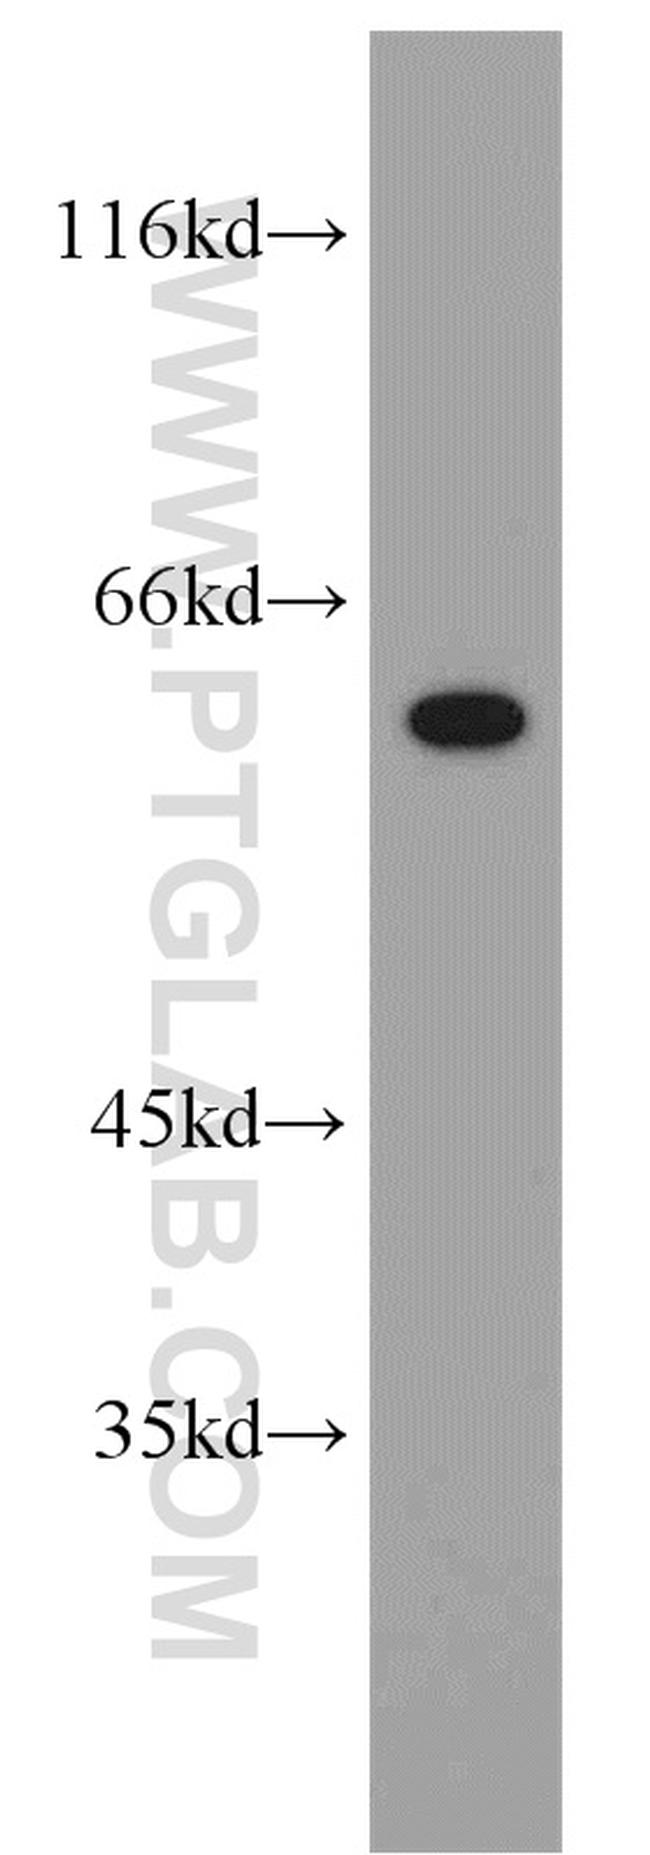 NOP58 Antibody in Western Blot (WB)